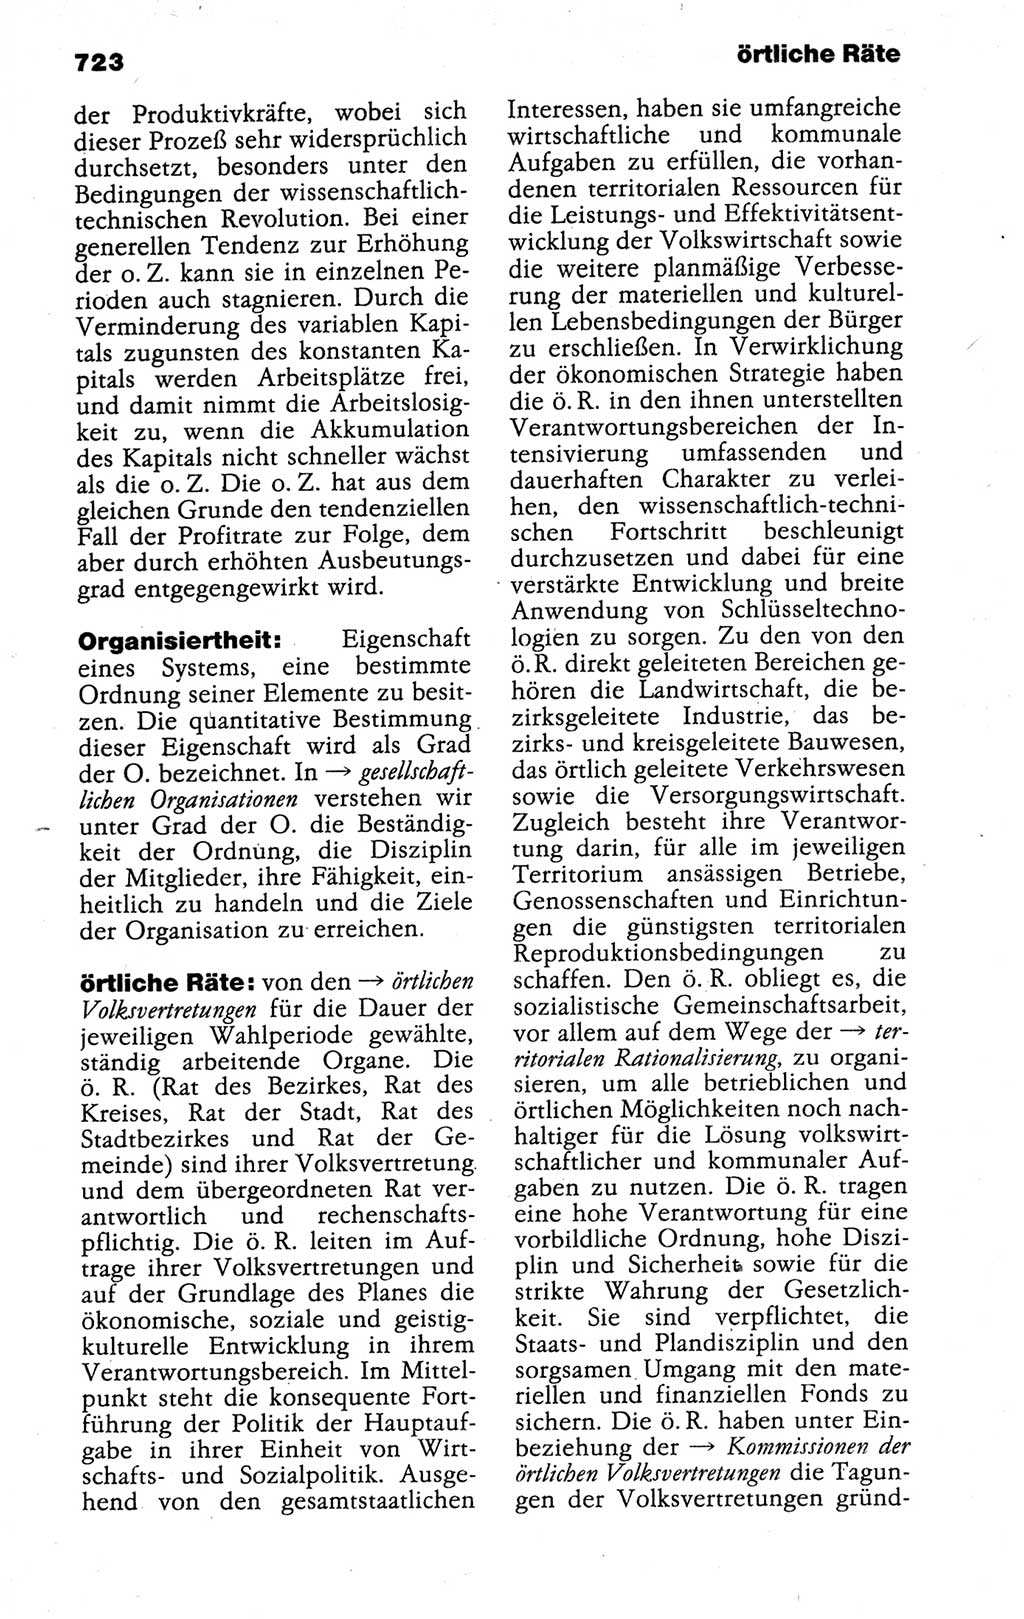 Kleines politisches Wörterbuch [Deutsche Demokratische Republik (DDR)] 1988, Seite 723 (Kl. pol. Wb. DDR 1988, S. 723)